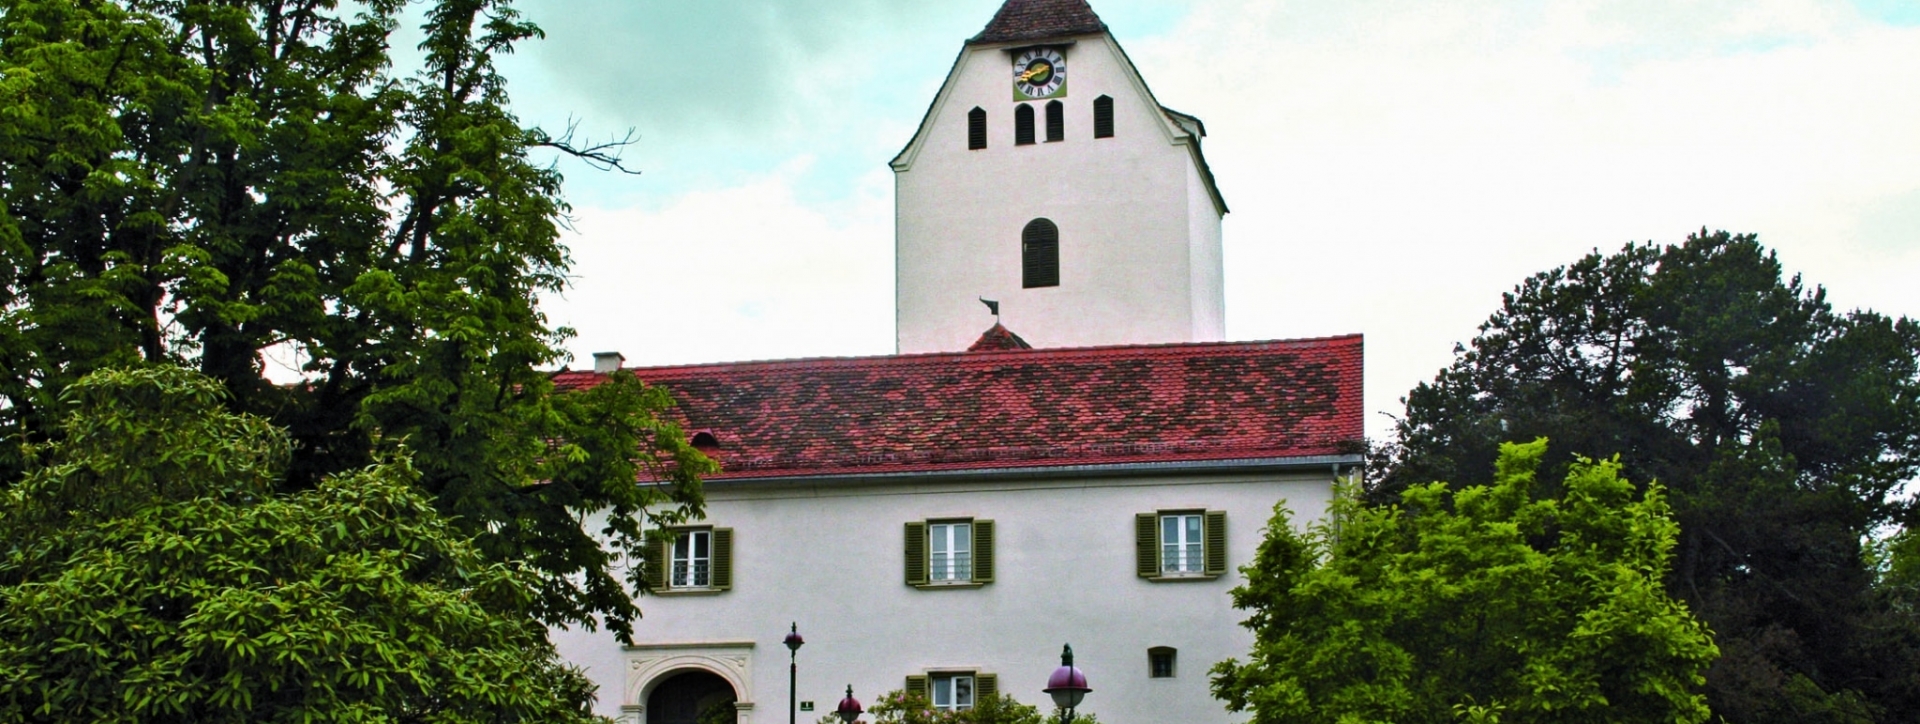 Taborkirche Weiz Außenansicht